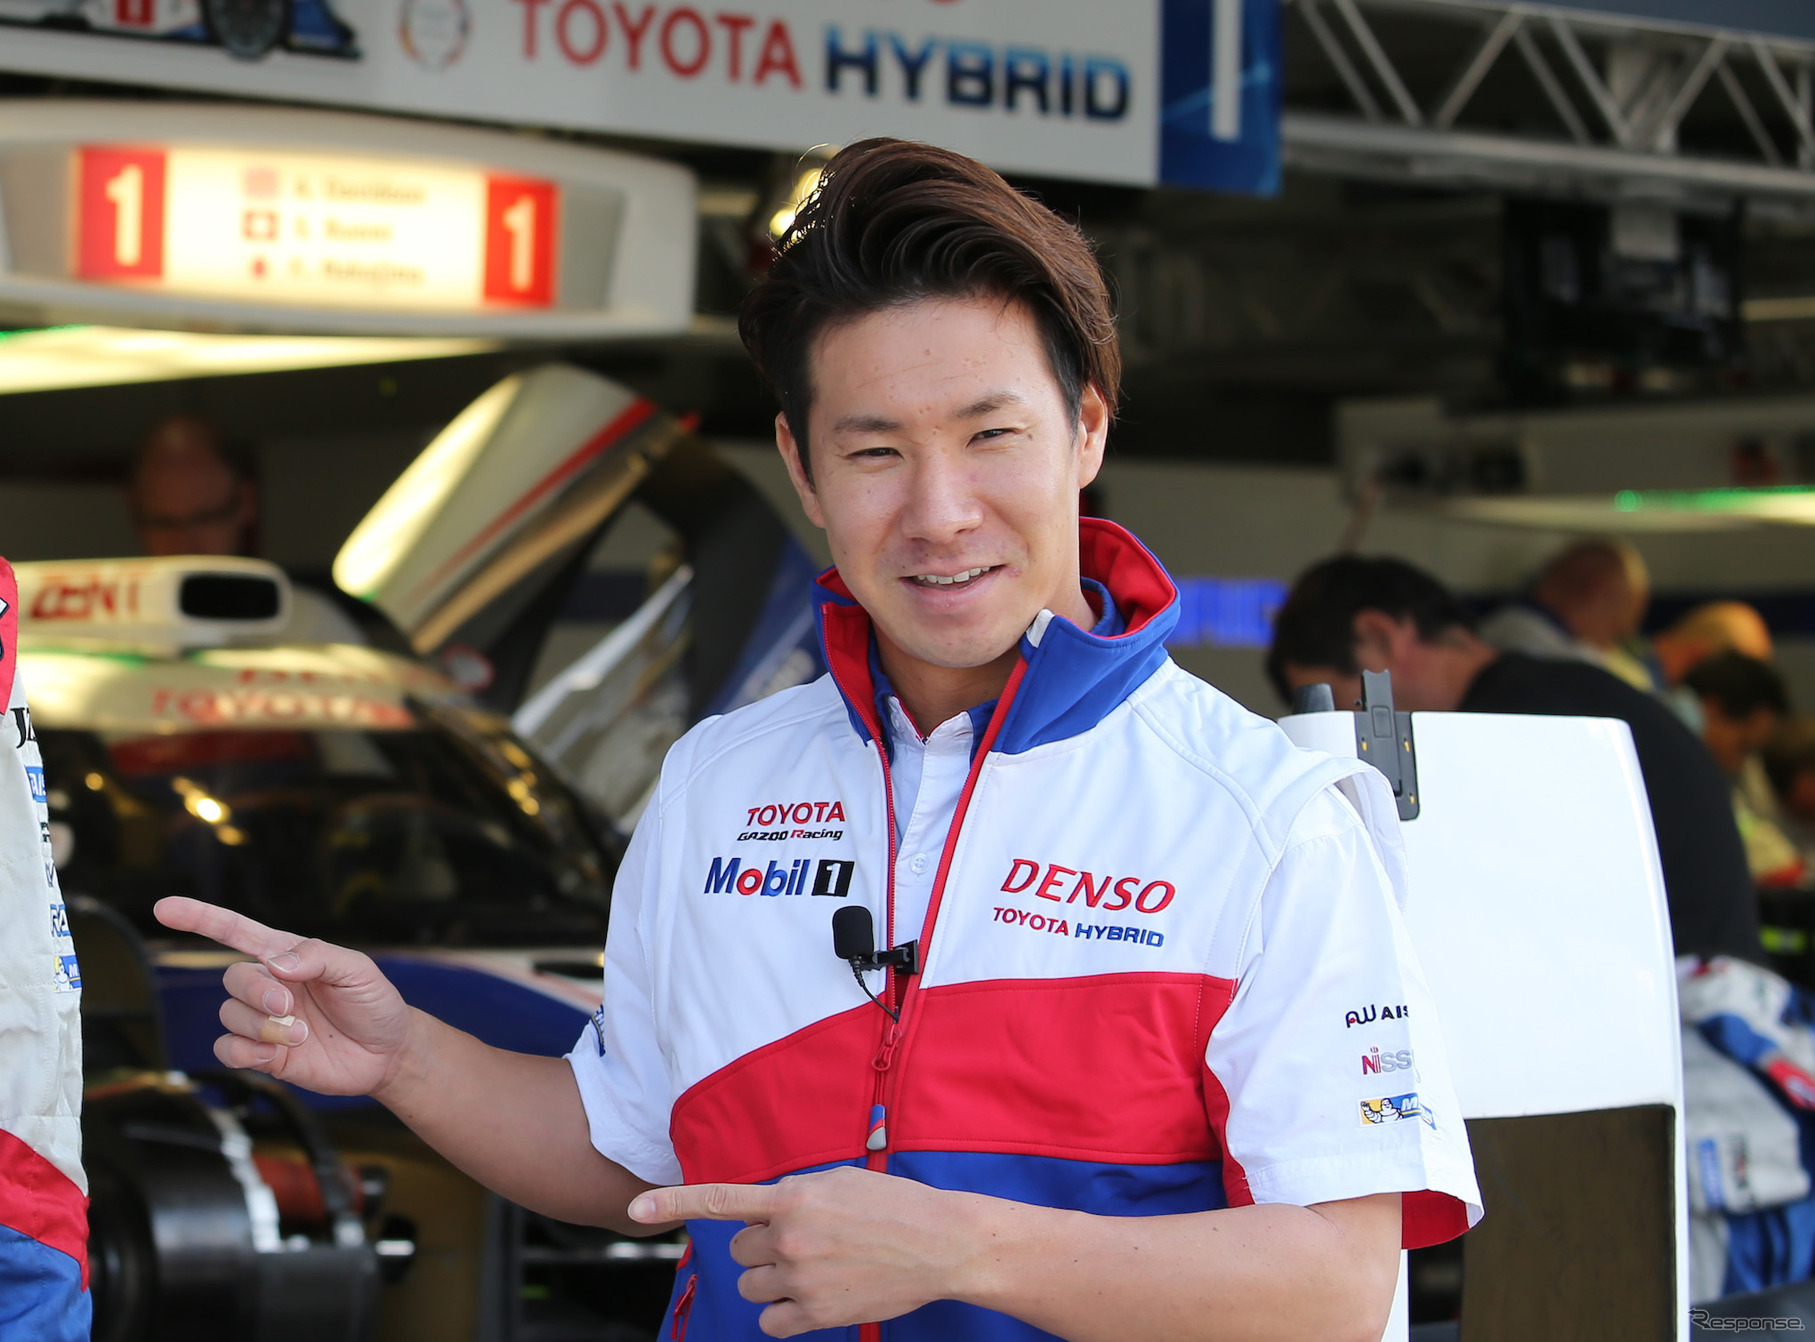 可夢偉は昨年もリザーブドライバーとしてトヨタのWECチームに参画していた。